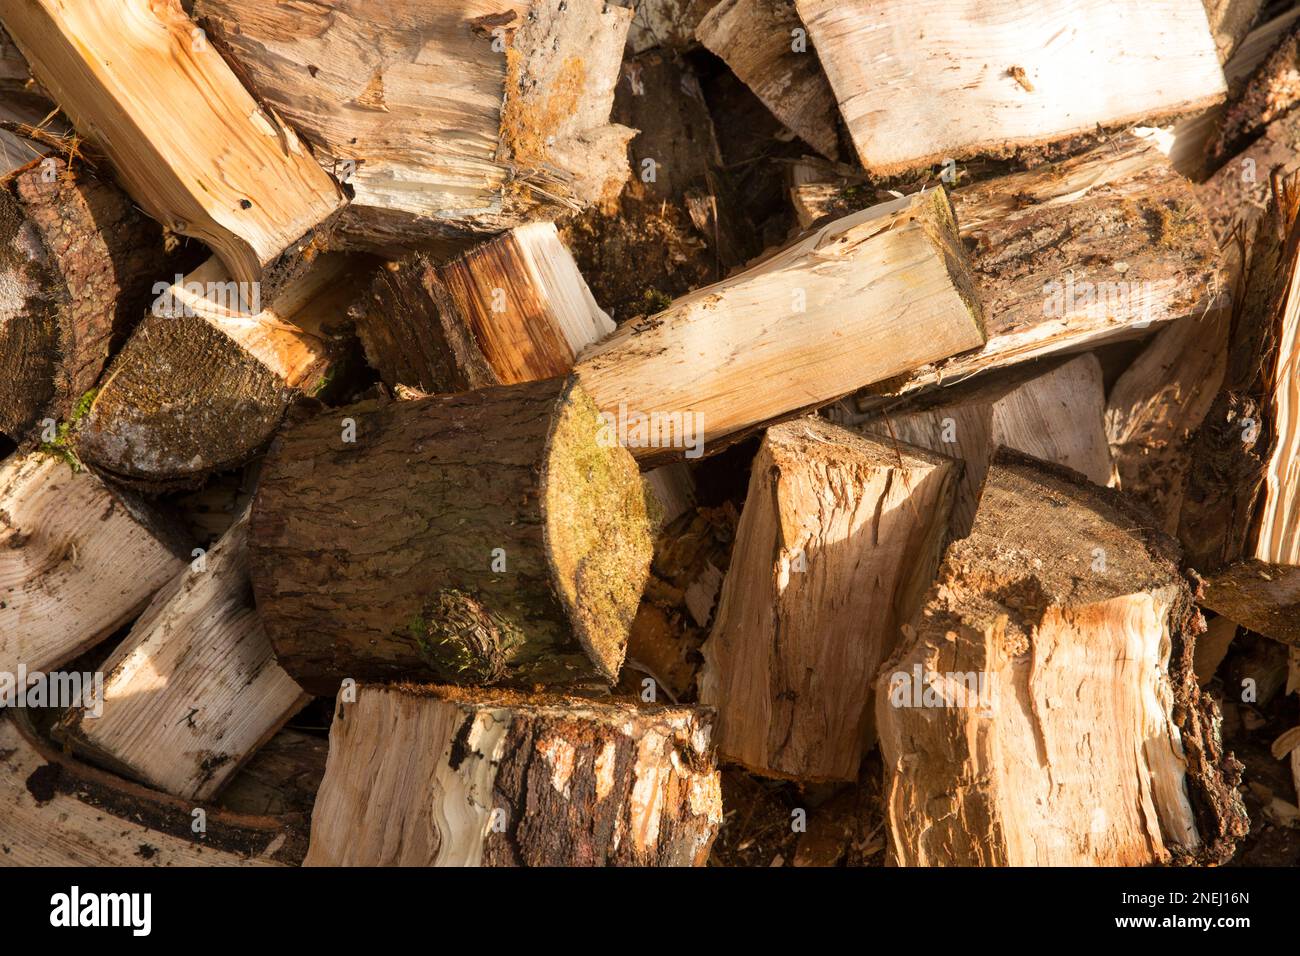 Tronchi che sono stati spaccati con un'ascia che sarà messo in un woodstore per asciugare sopra l'estate come combustibile per una stufa di legna che brucia. Inghilterra Regno Unito GB Foto Stock